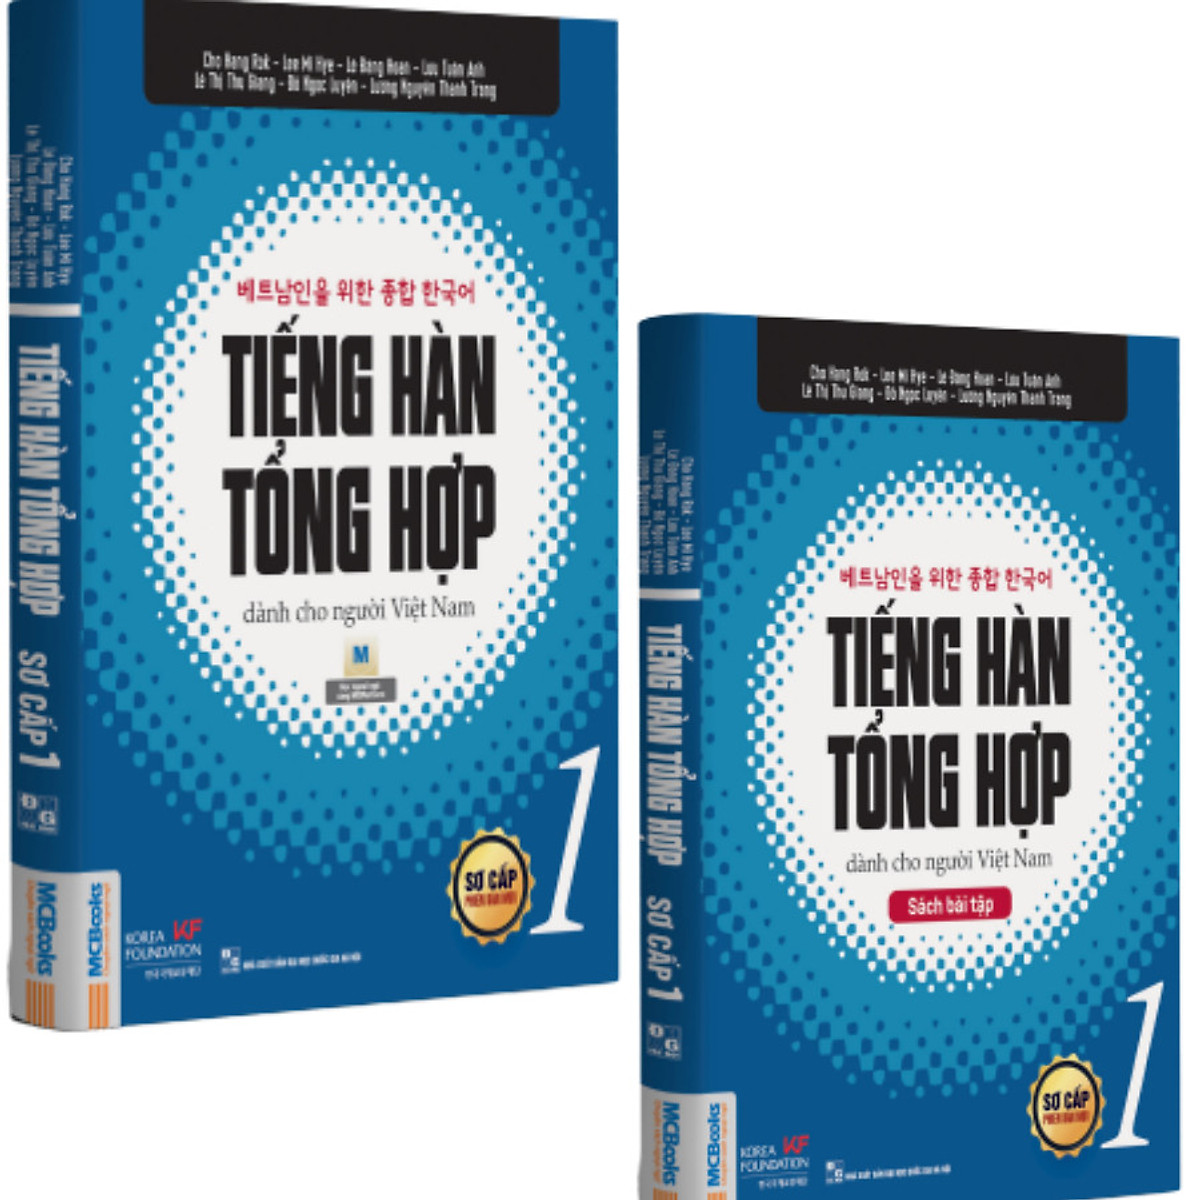 Combo Tiếng Hàn Tổng Hợp Dành Cho Người Việt Nam Sơ Cấp (4 Cuốn) - bản 2 màu